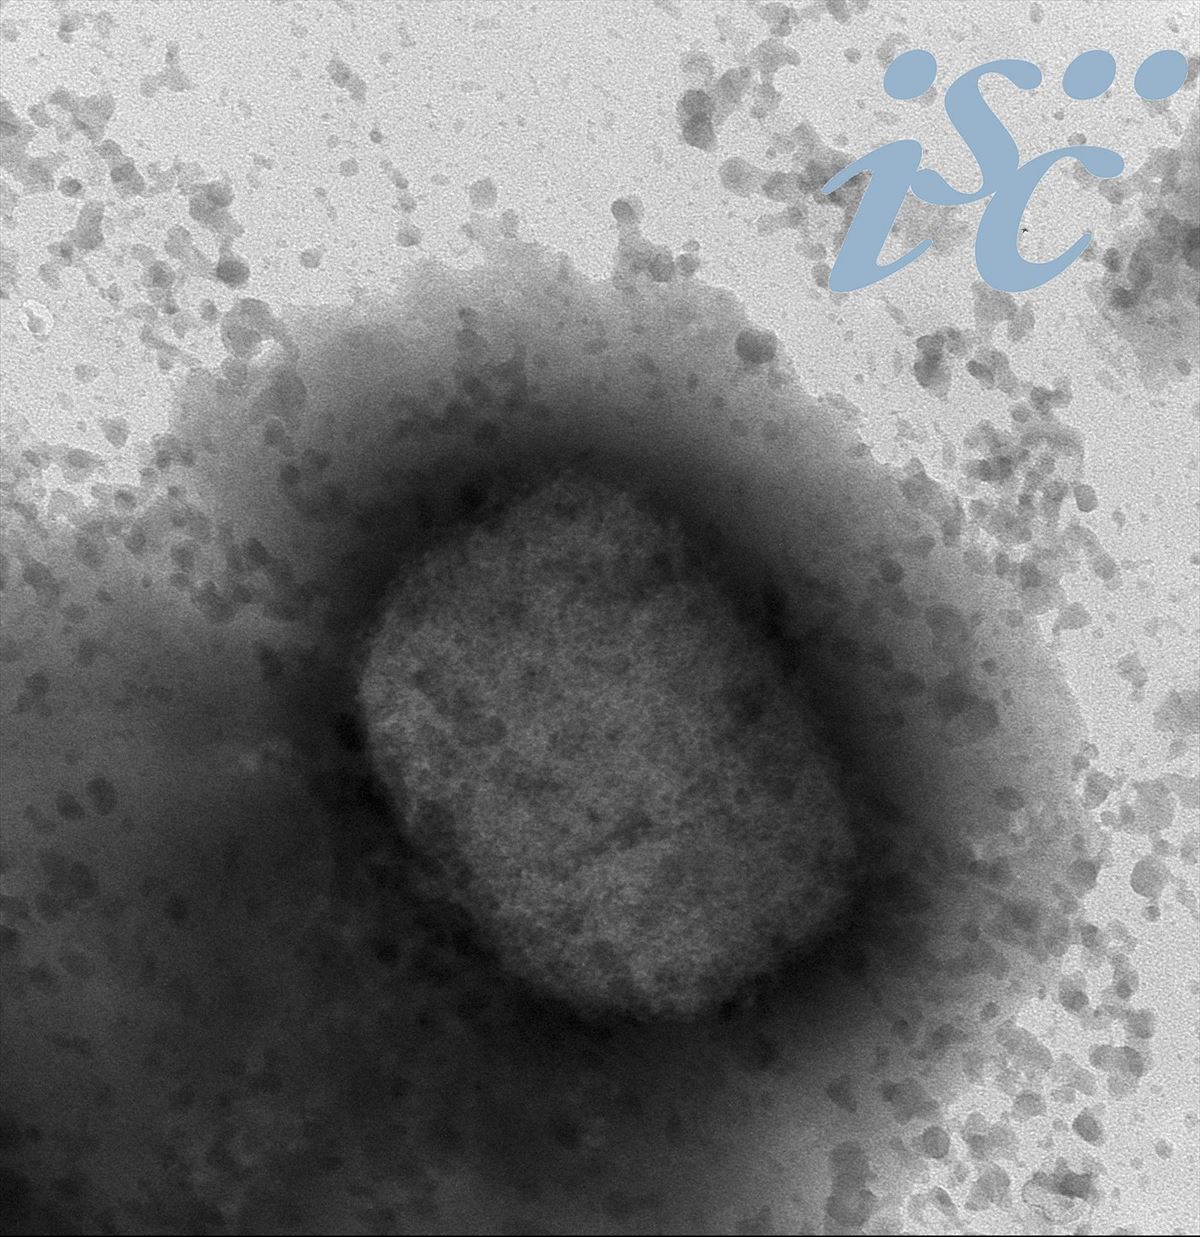 Tximino-baztangaren birusa mikroskopioan. Artxiboko argazkia: EFE